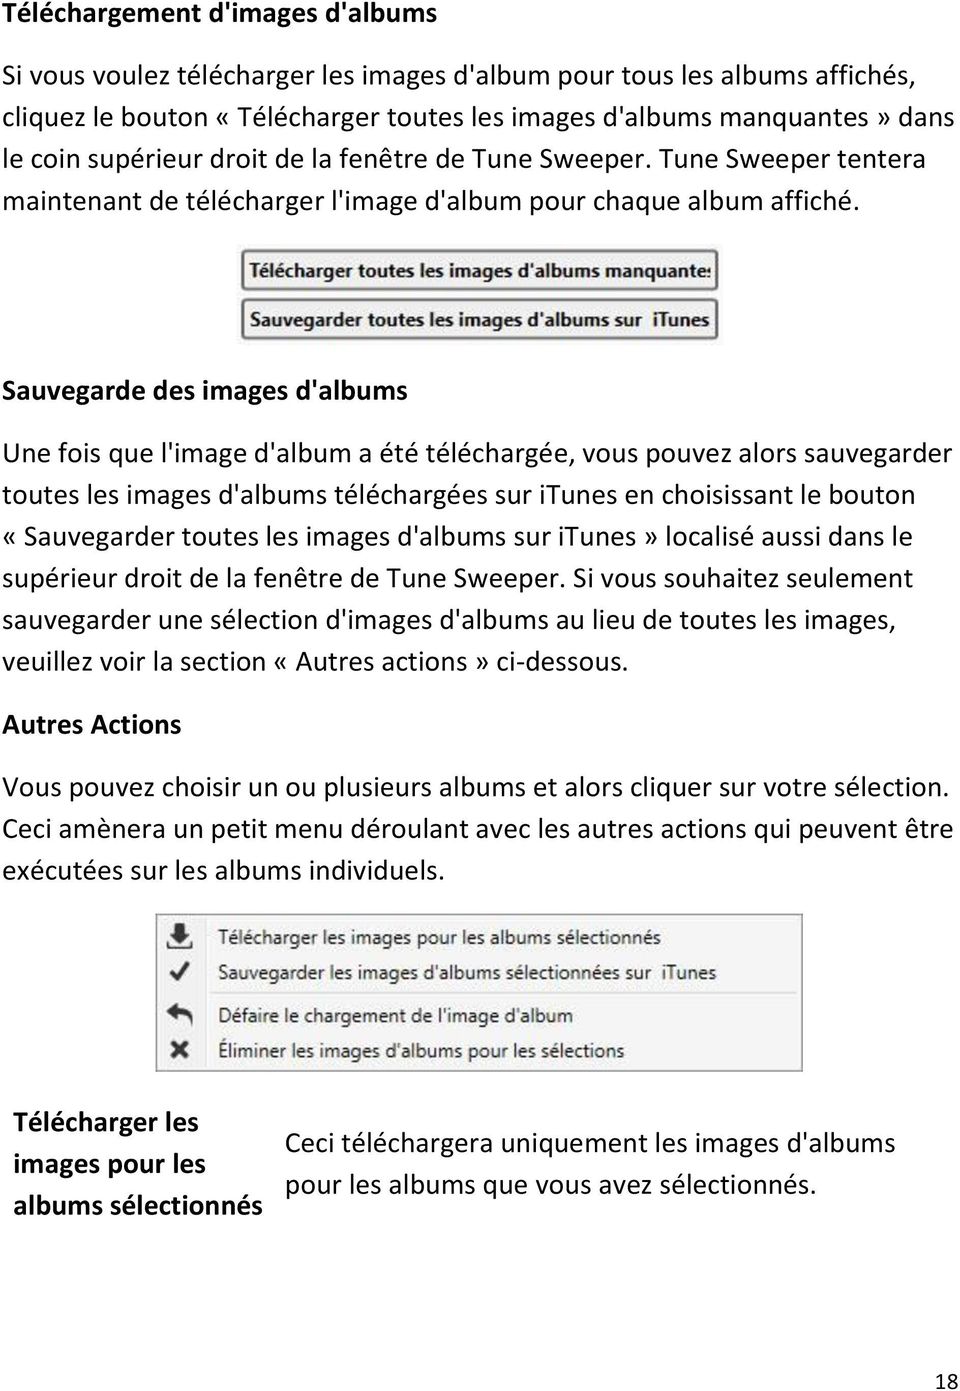 Sauvegarde des images d'albums Une fois que l'image d'album a été téléchargée, vous pouvez alors sauvegarder toutes les images d'albums téléchargées sur itunes en choisissant le bouton «Sauvegarder